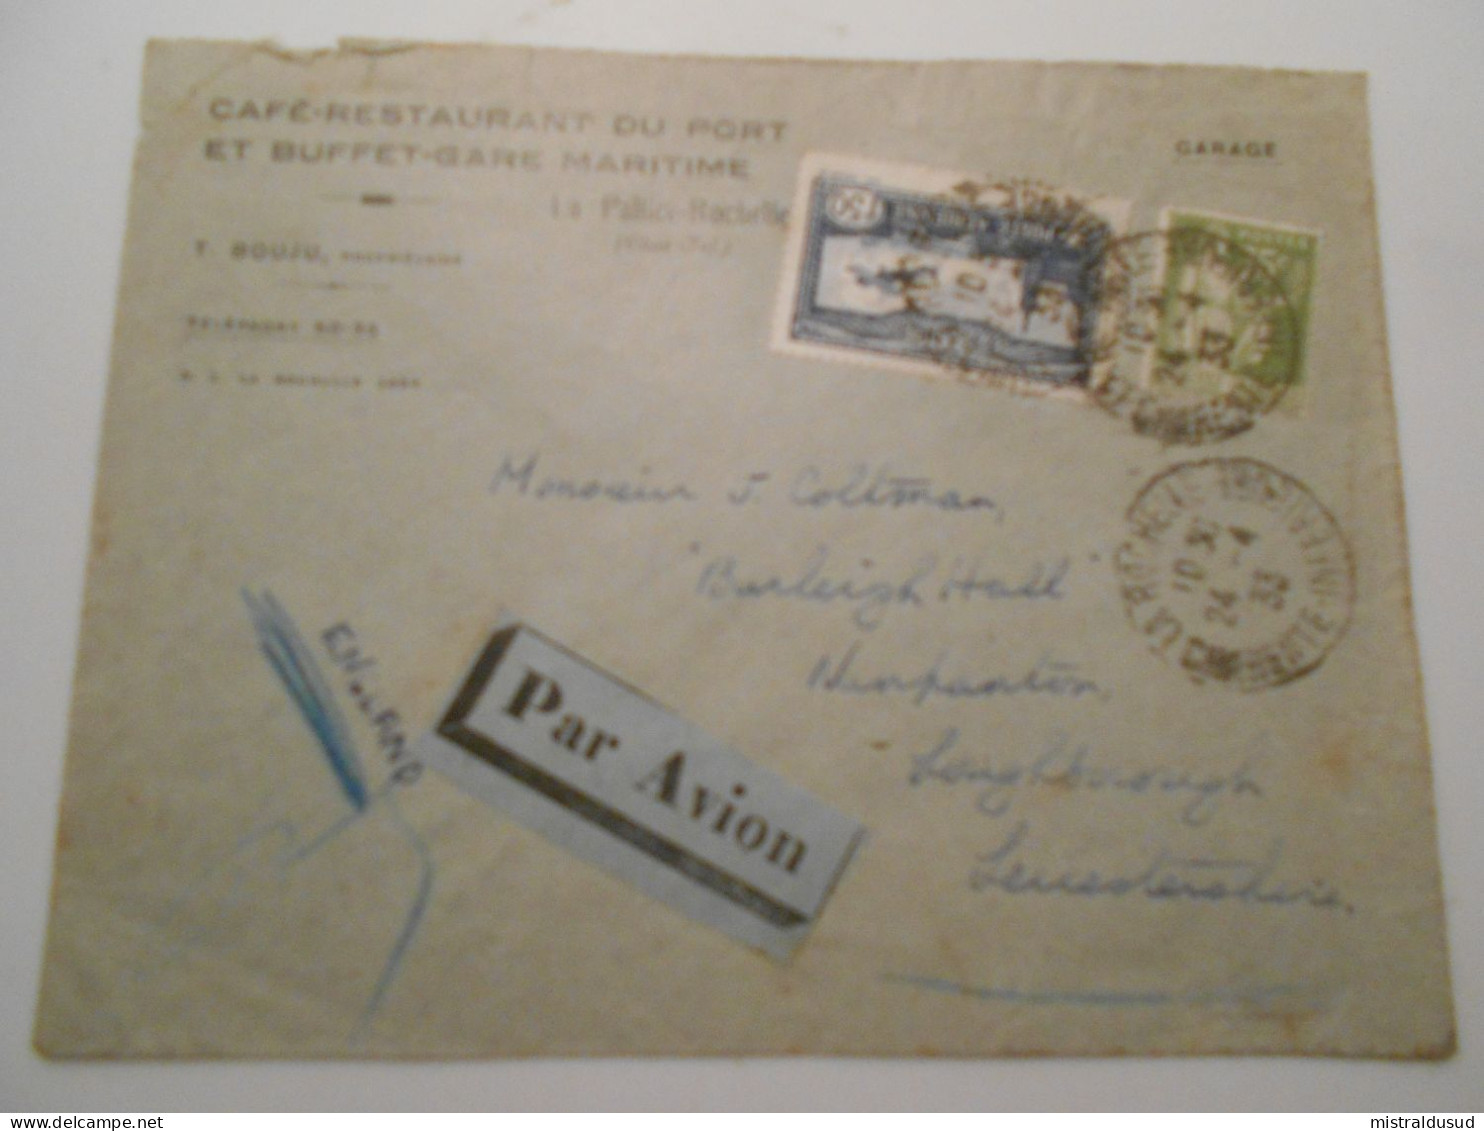 France Poste Aerienne , Lettre De La Roçhelle 1933 Pour Leuçestershire - 1927-1959 Covers & Documents